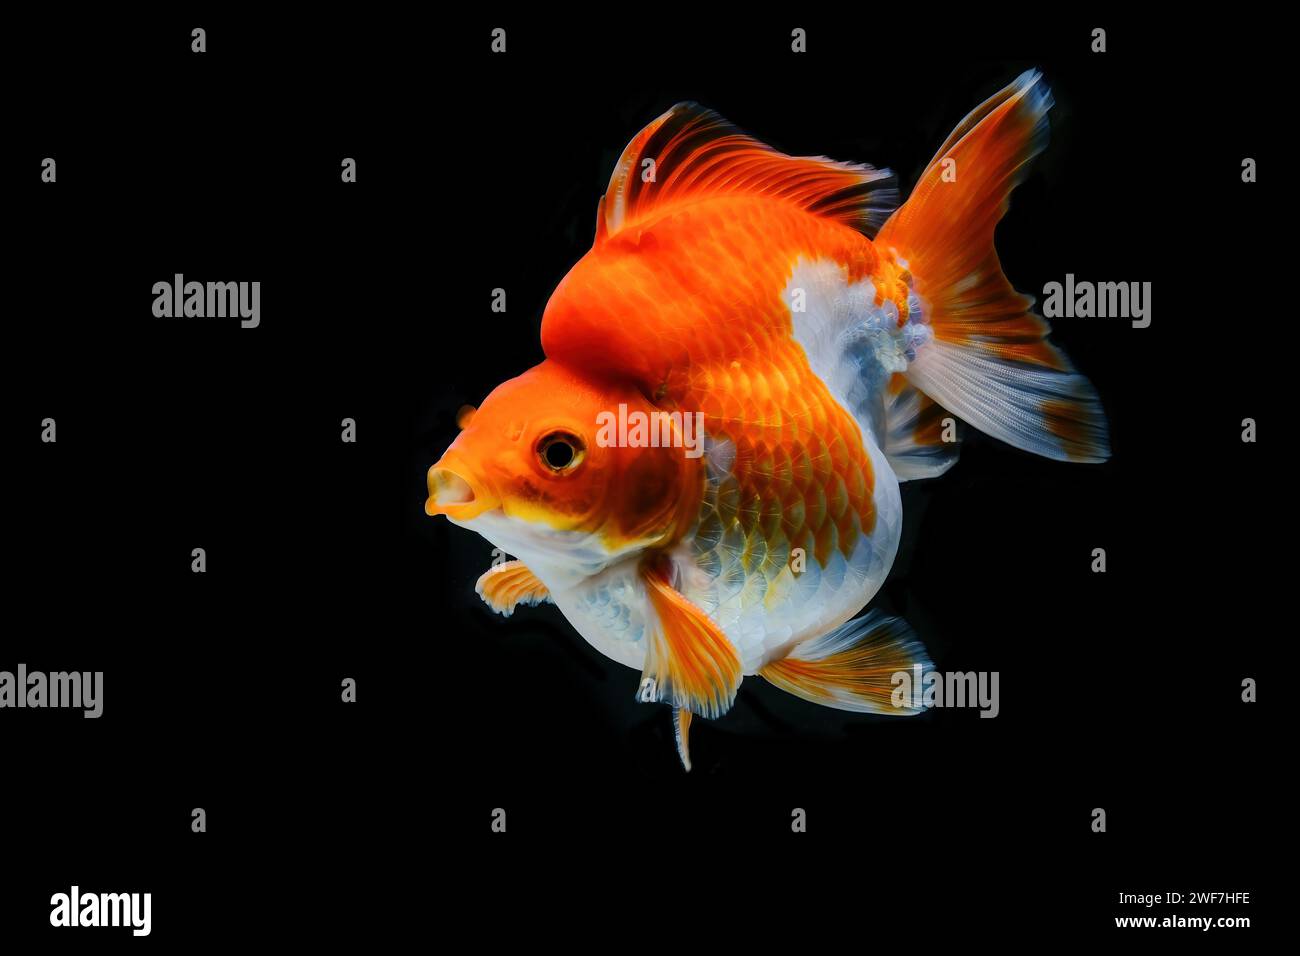 Red & White Ryukin Goldfish (Carassius auratus) Stock Photo